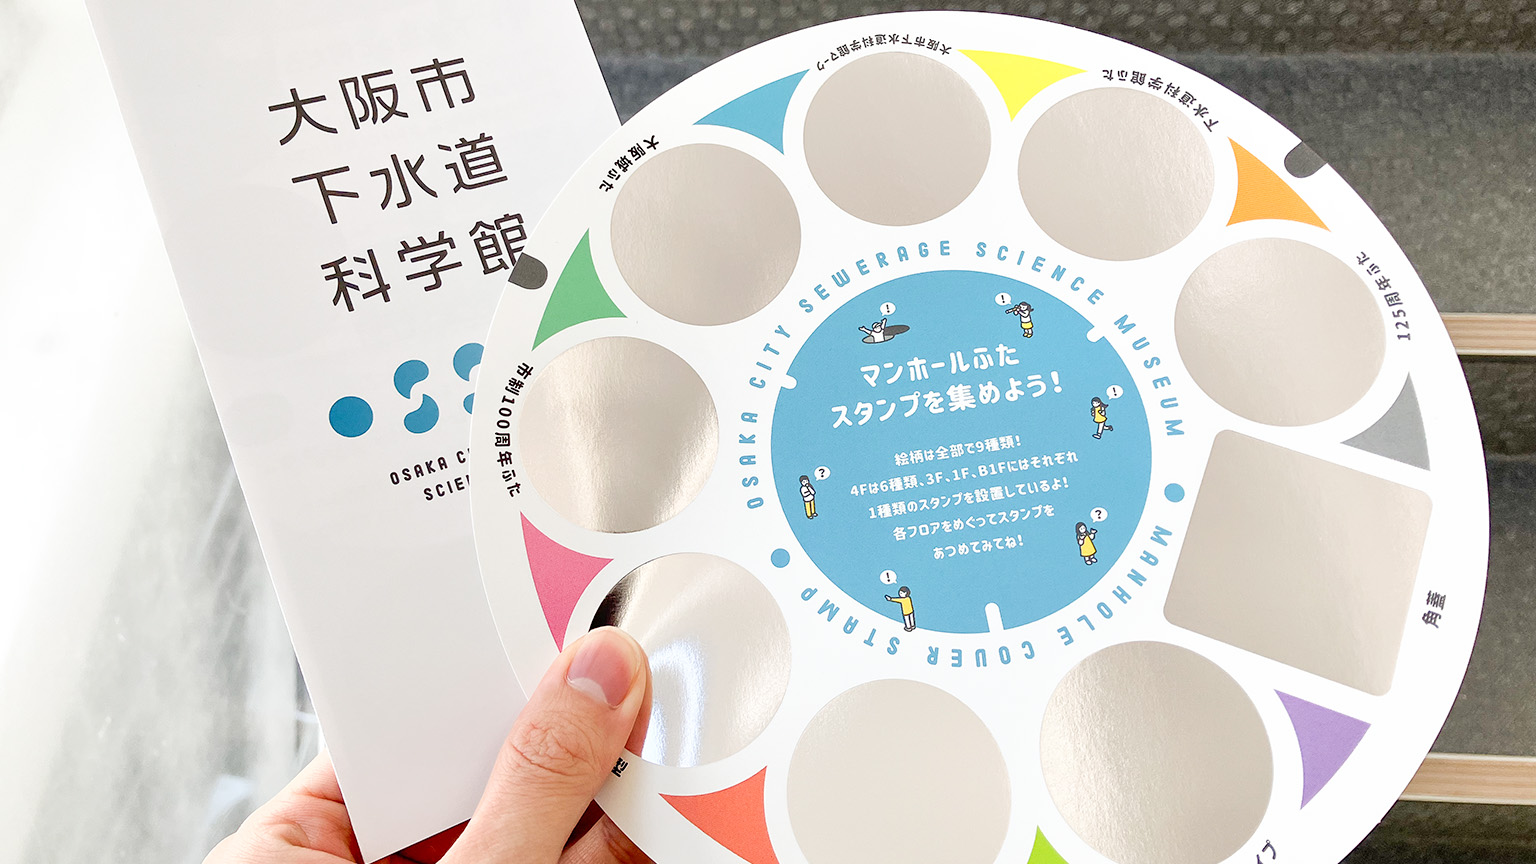 大阪市下水道科学館の冊子とスタンプを押す紙の写真